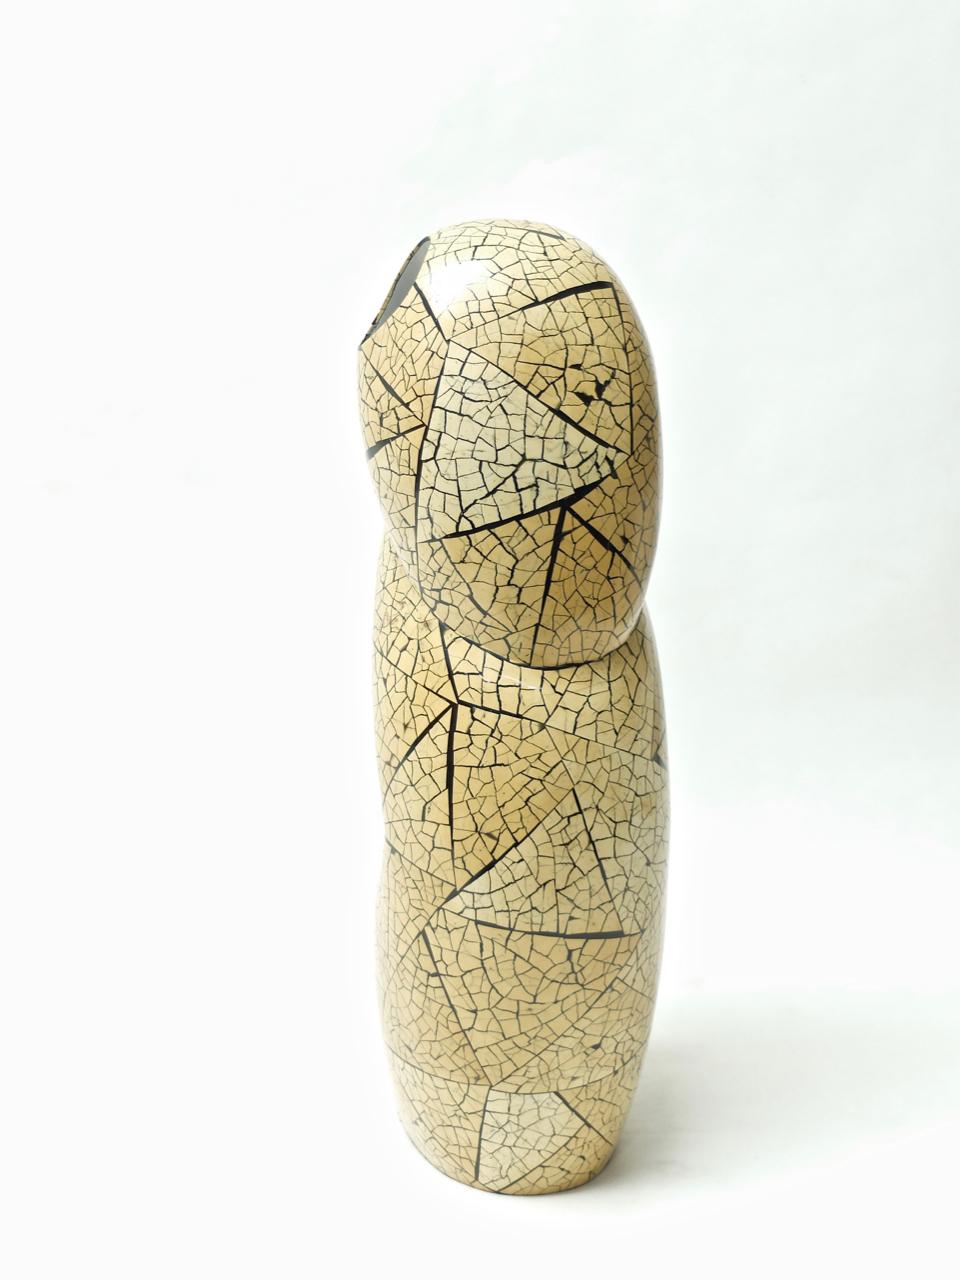 Große, ungewöhnlich geschwungene, skulpturale Vase mit eingelegtem Bambus, entworfen und hergestellt von Ria & Youri Augousti, London in den 1990er Jahren. Auf der Unterseite steht: 